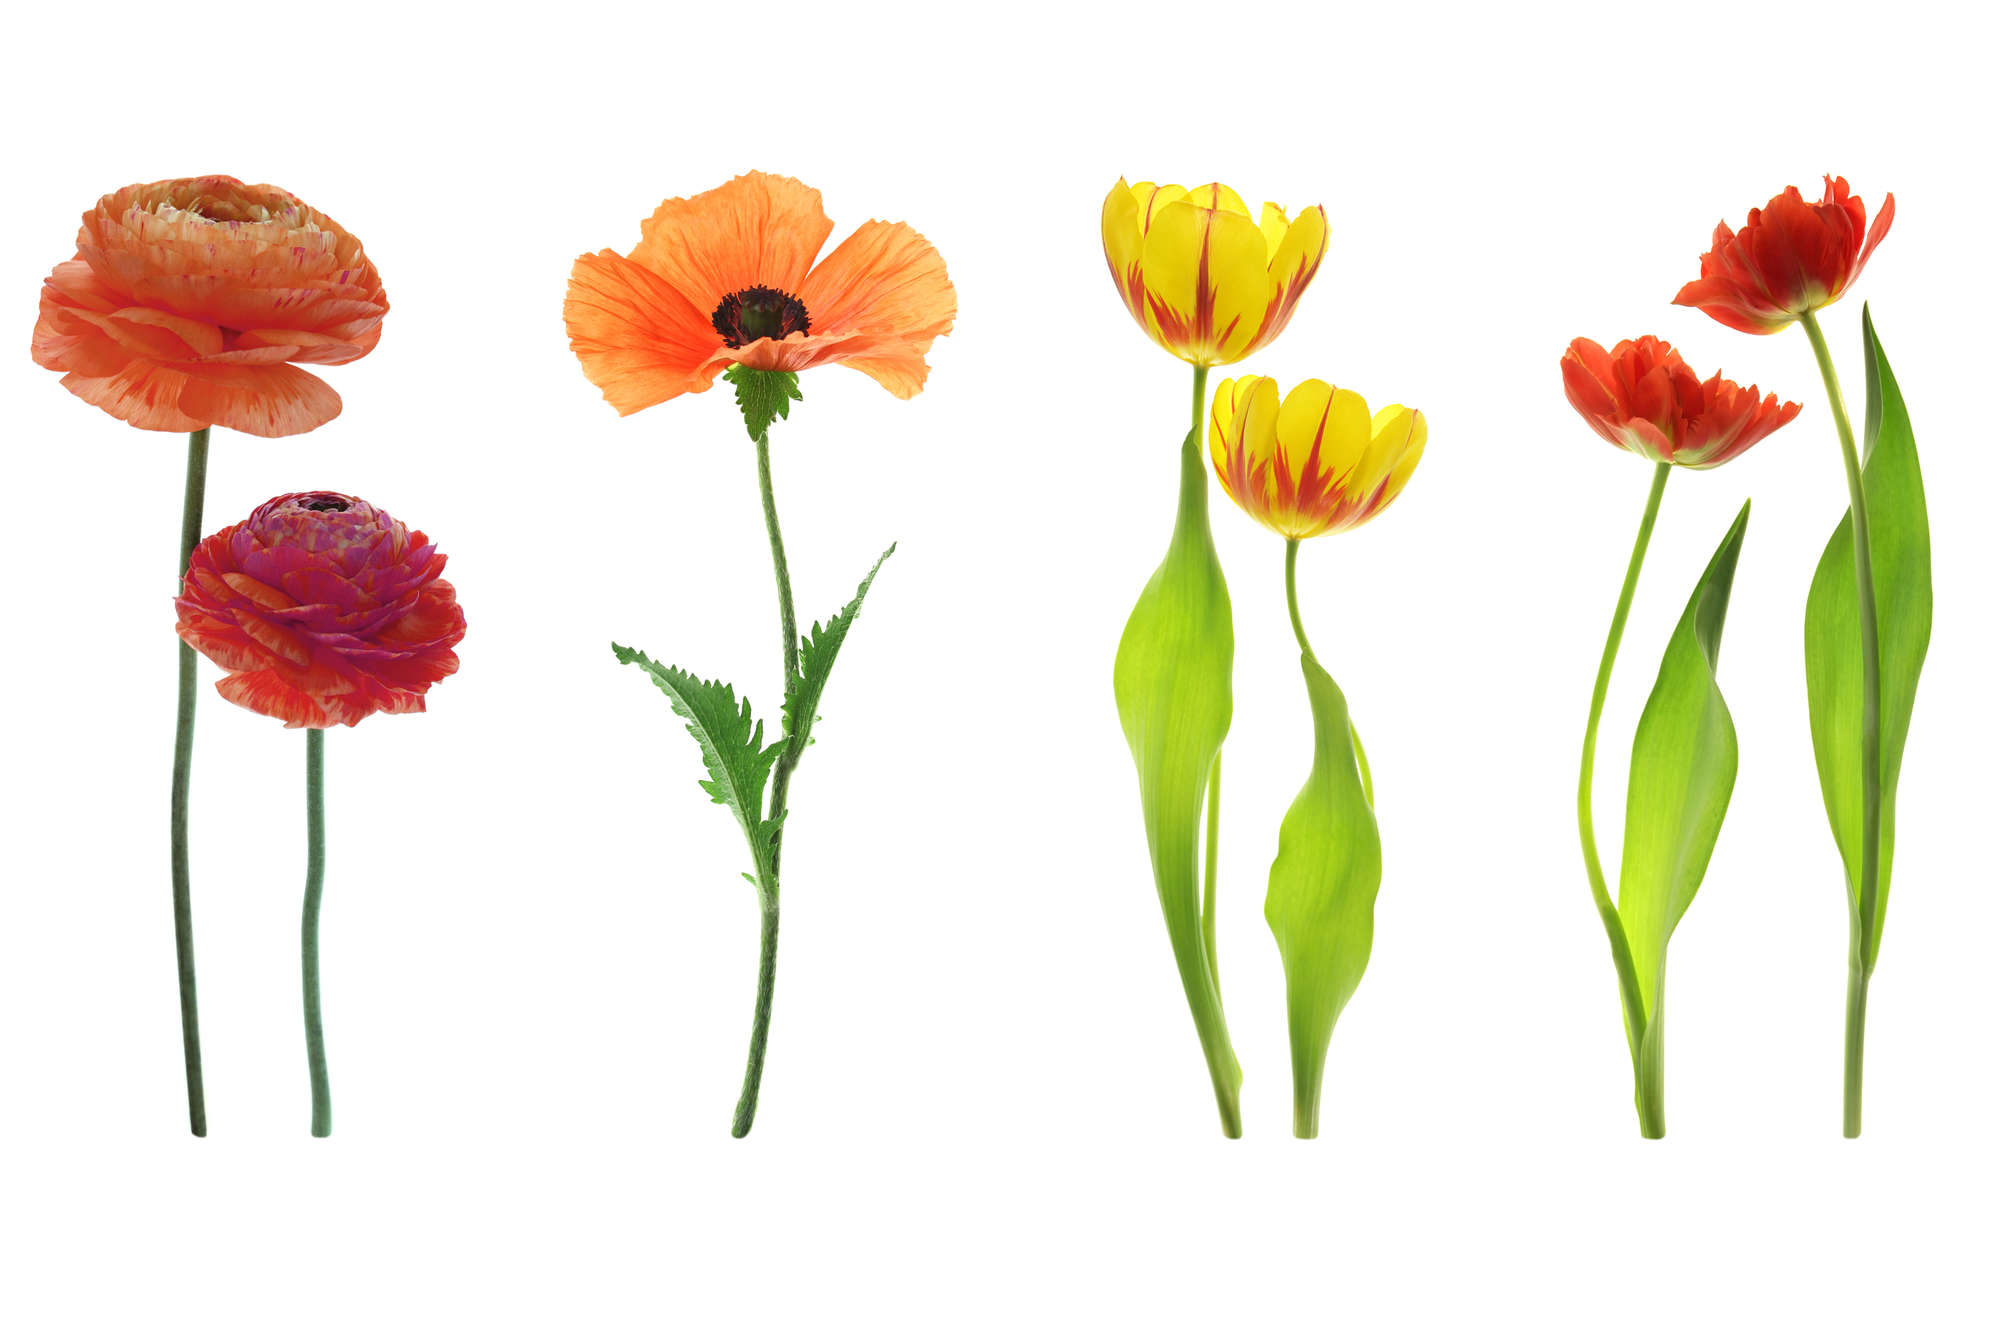             papiers peints à impression numérique variété de fleurs individuelles - intissé structuré
        